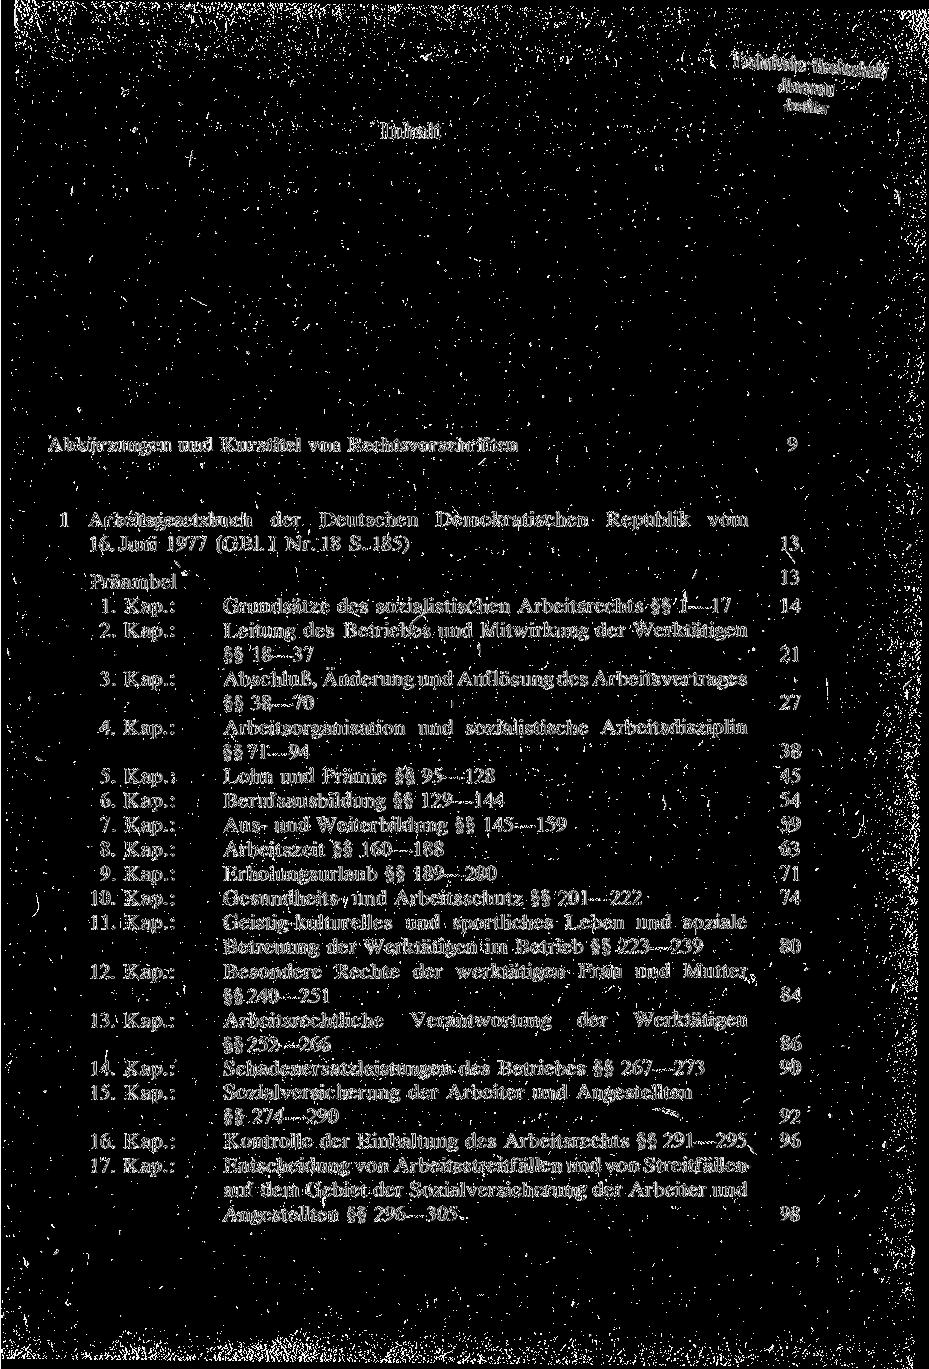 Inhalt Technische Hochsehufa Jlmenau Justitiar Abkürzungen und Kurztitel von Rechtsvorschriften 1 Arbeitsgesetzbuch der Deutschen Demokratischen Republik vom 16. Juni 1977 (GB1.I Nr. 18 S.